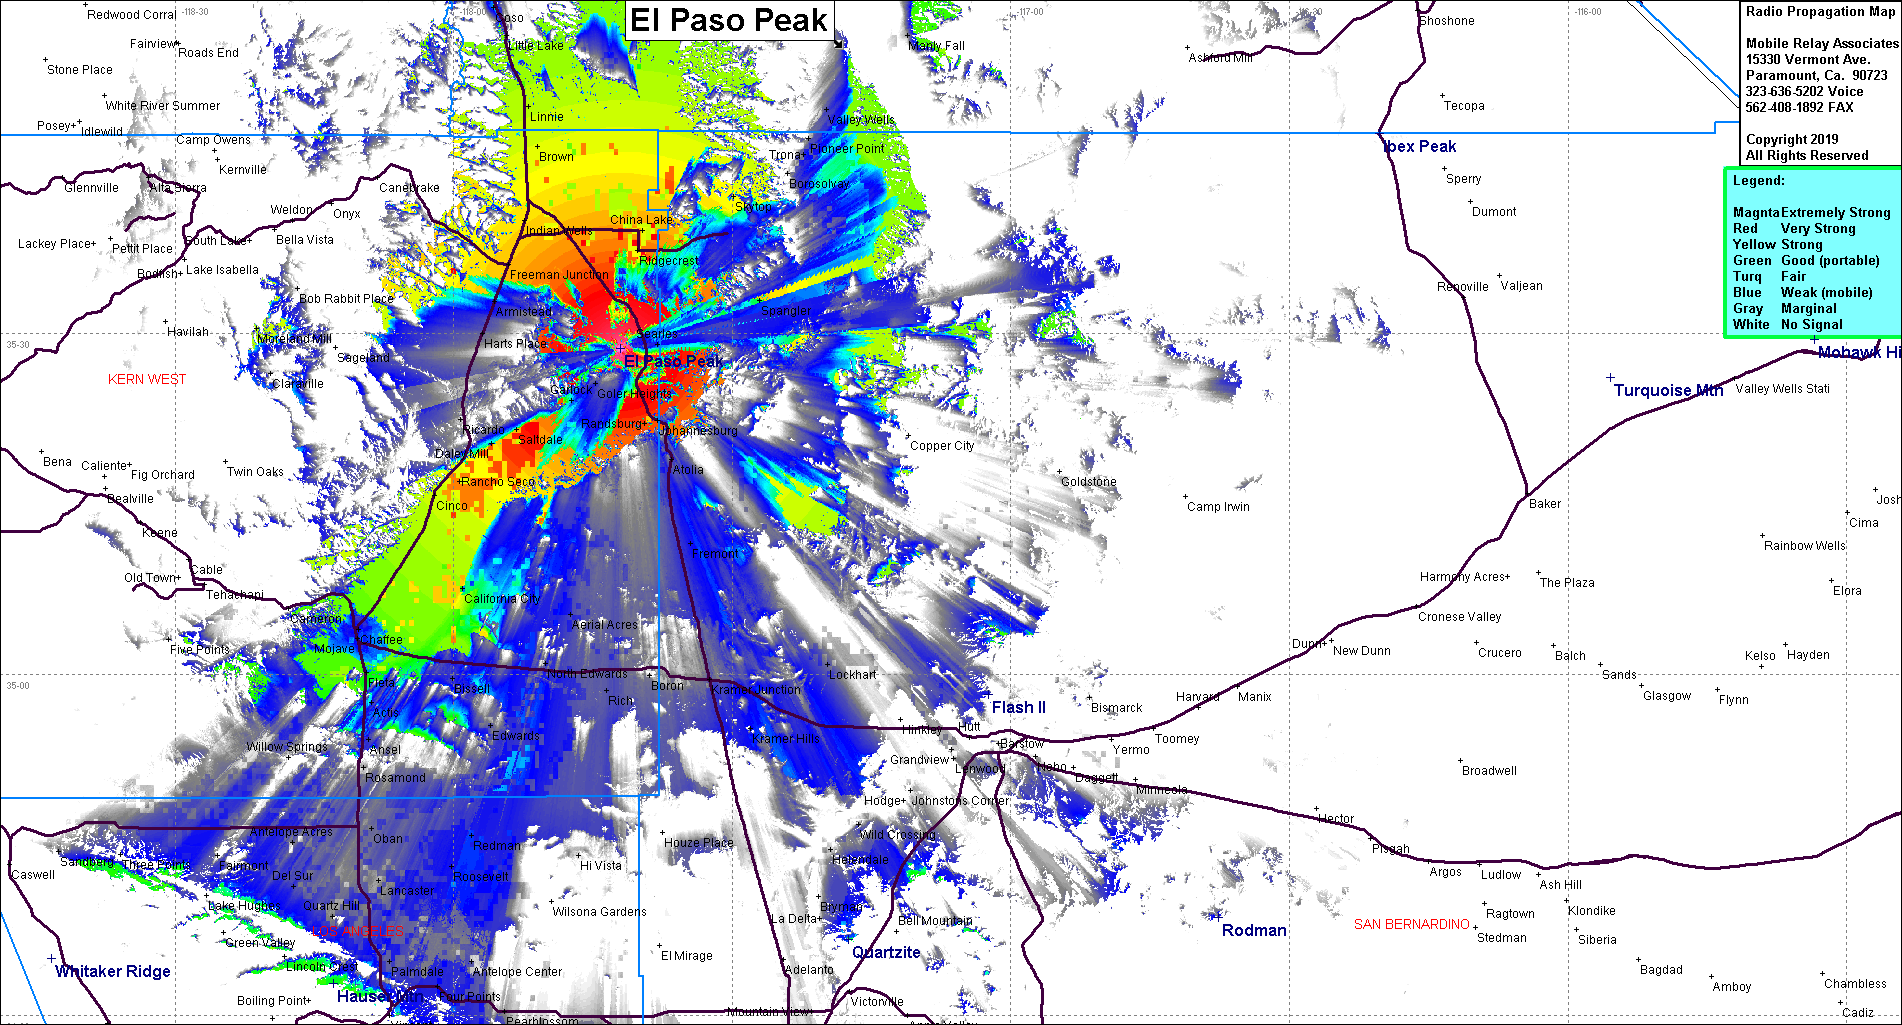 heat map radio coverage El Paso Peak